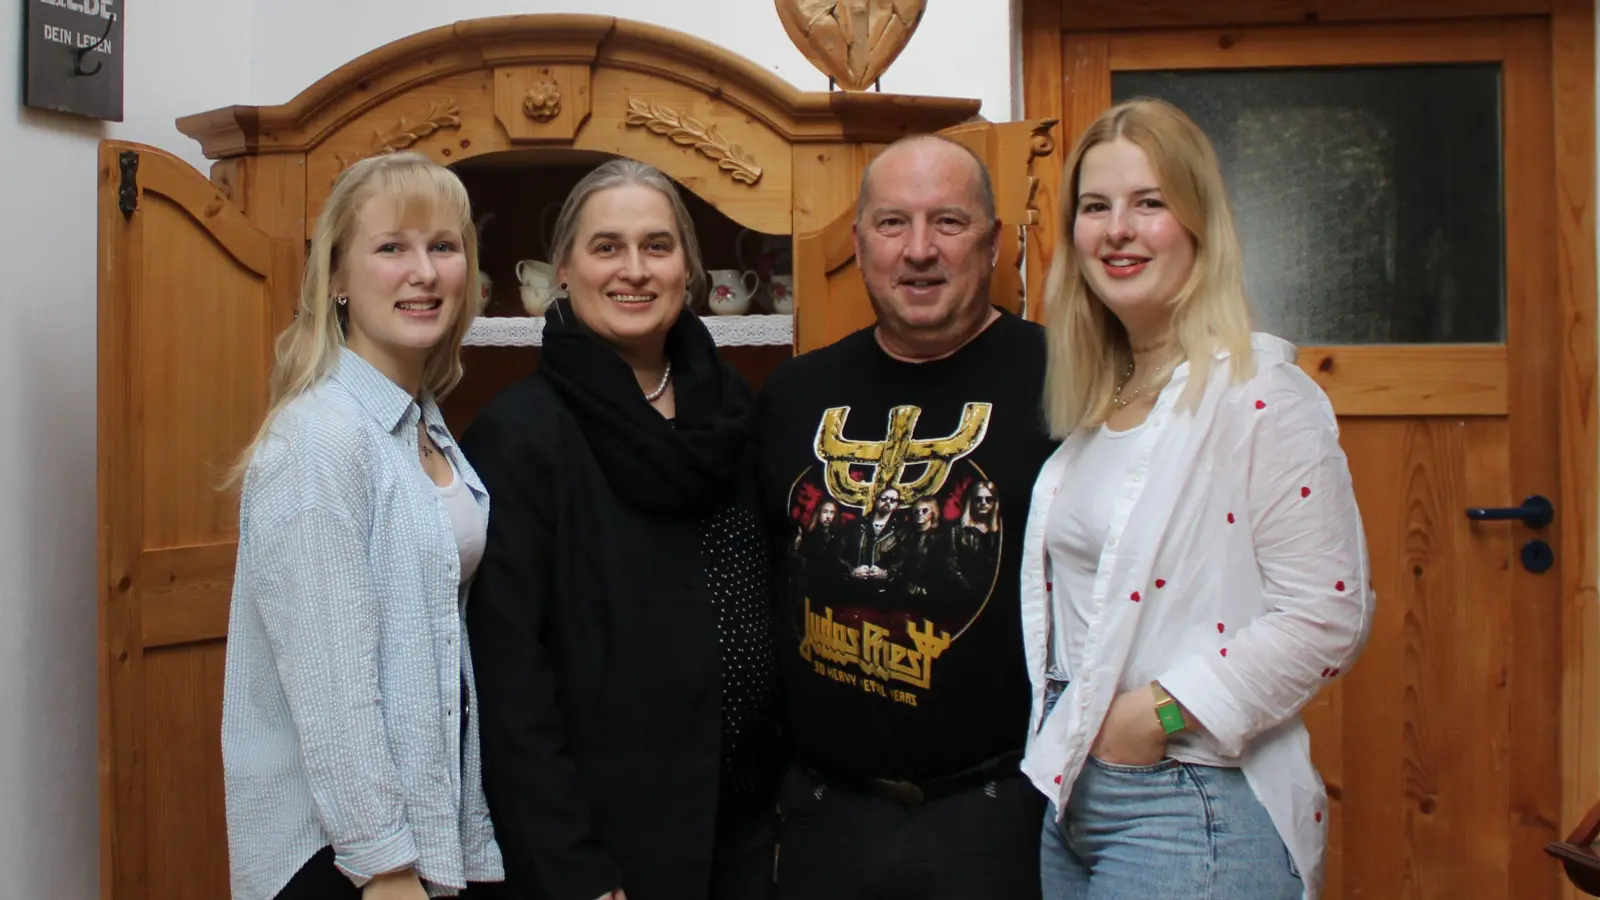 Familie Dallheimer ist das neue Team im Szenestübla (von links): Jasmin, Andrea, Jochen und Julia. (Foto: privat)